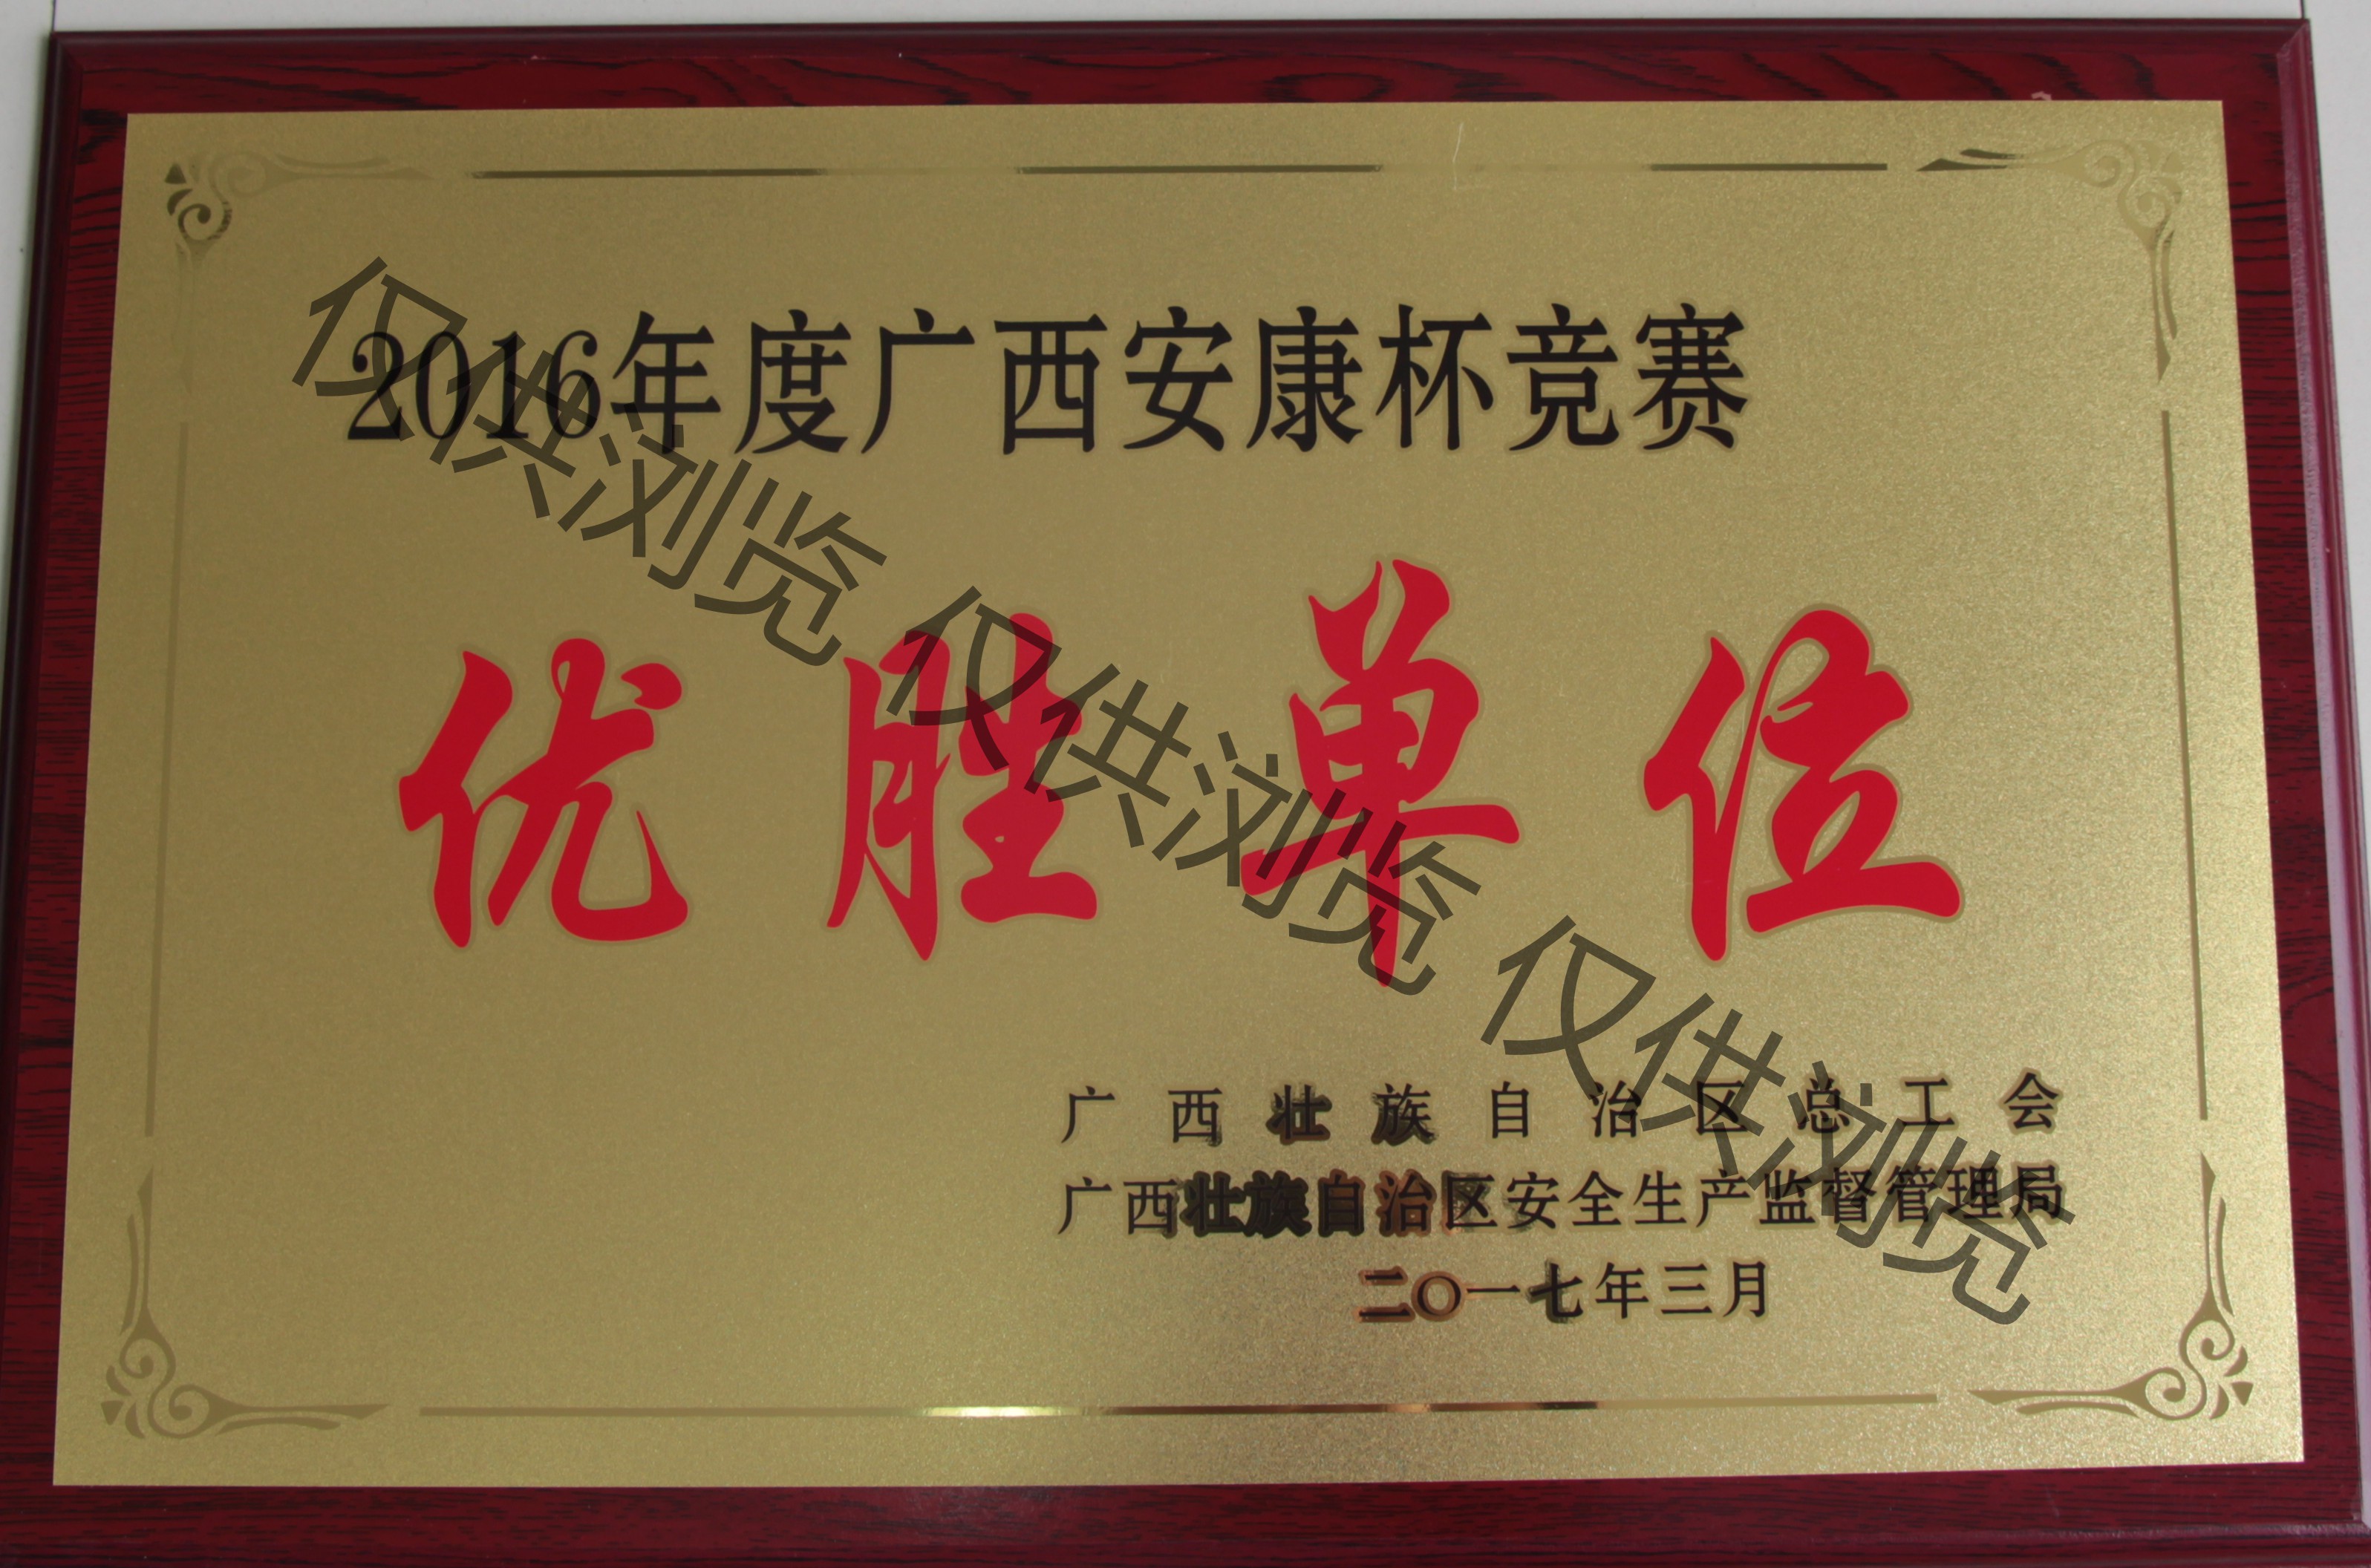 八桂获2016年度广西安康杯优胜单位牌匾